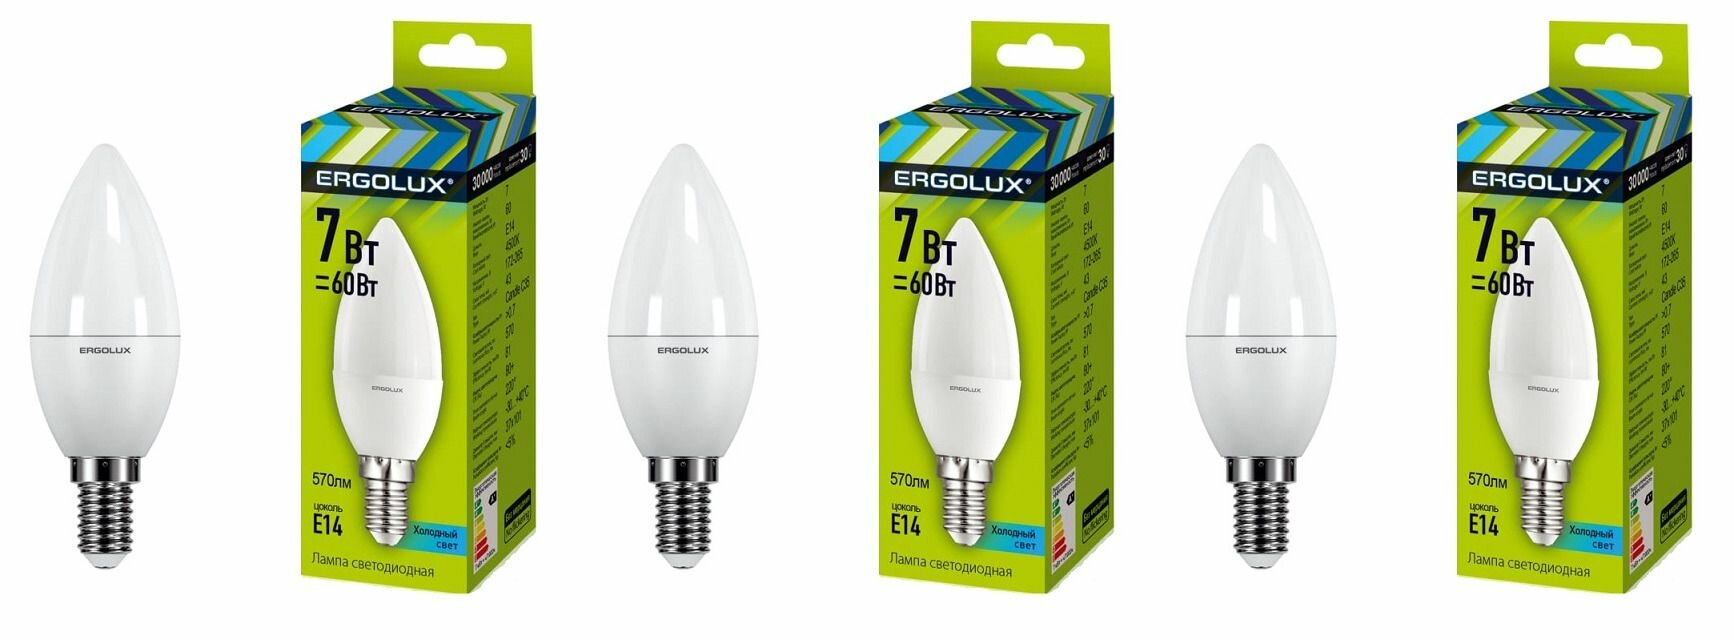 Ergolux Лампочка LED-C35-7W-E14-4K, Свеча, светодиодная, 3 шт.